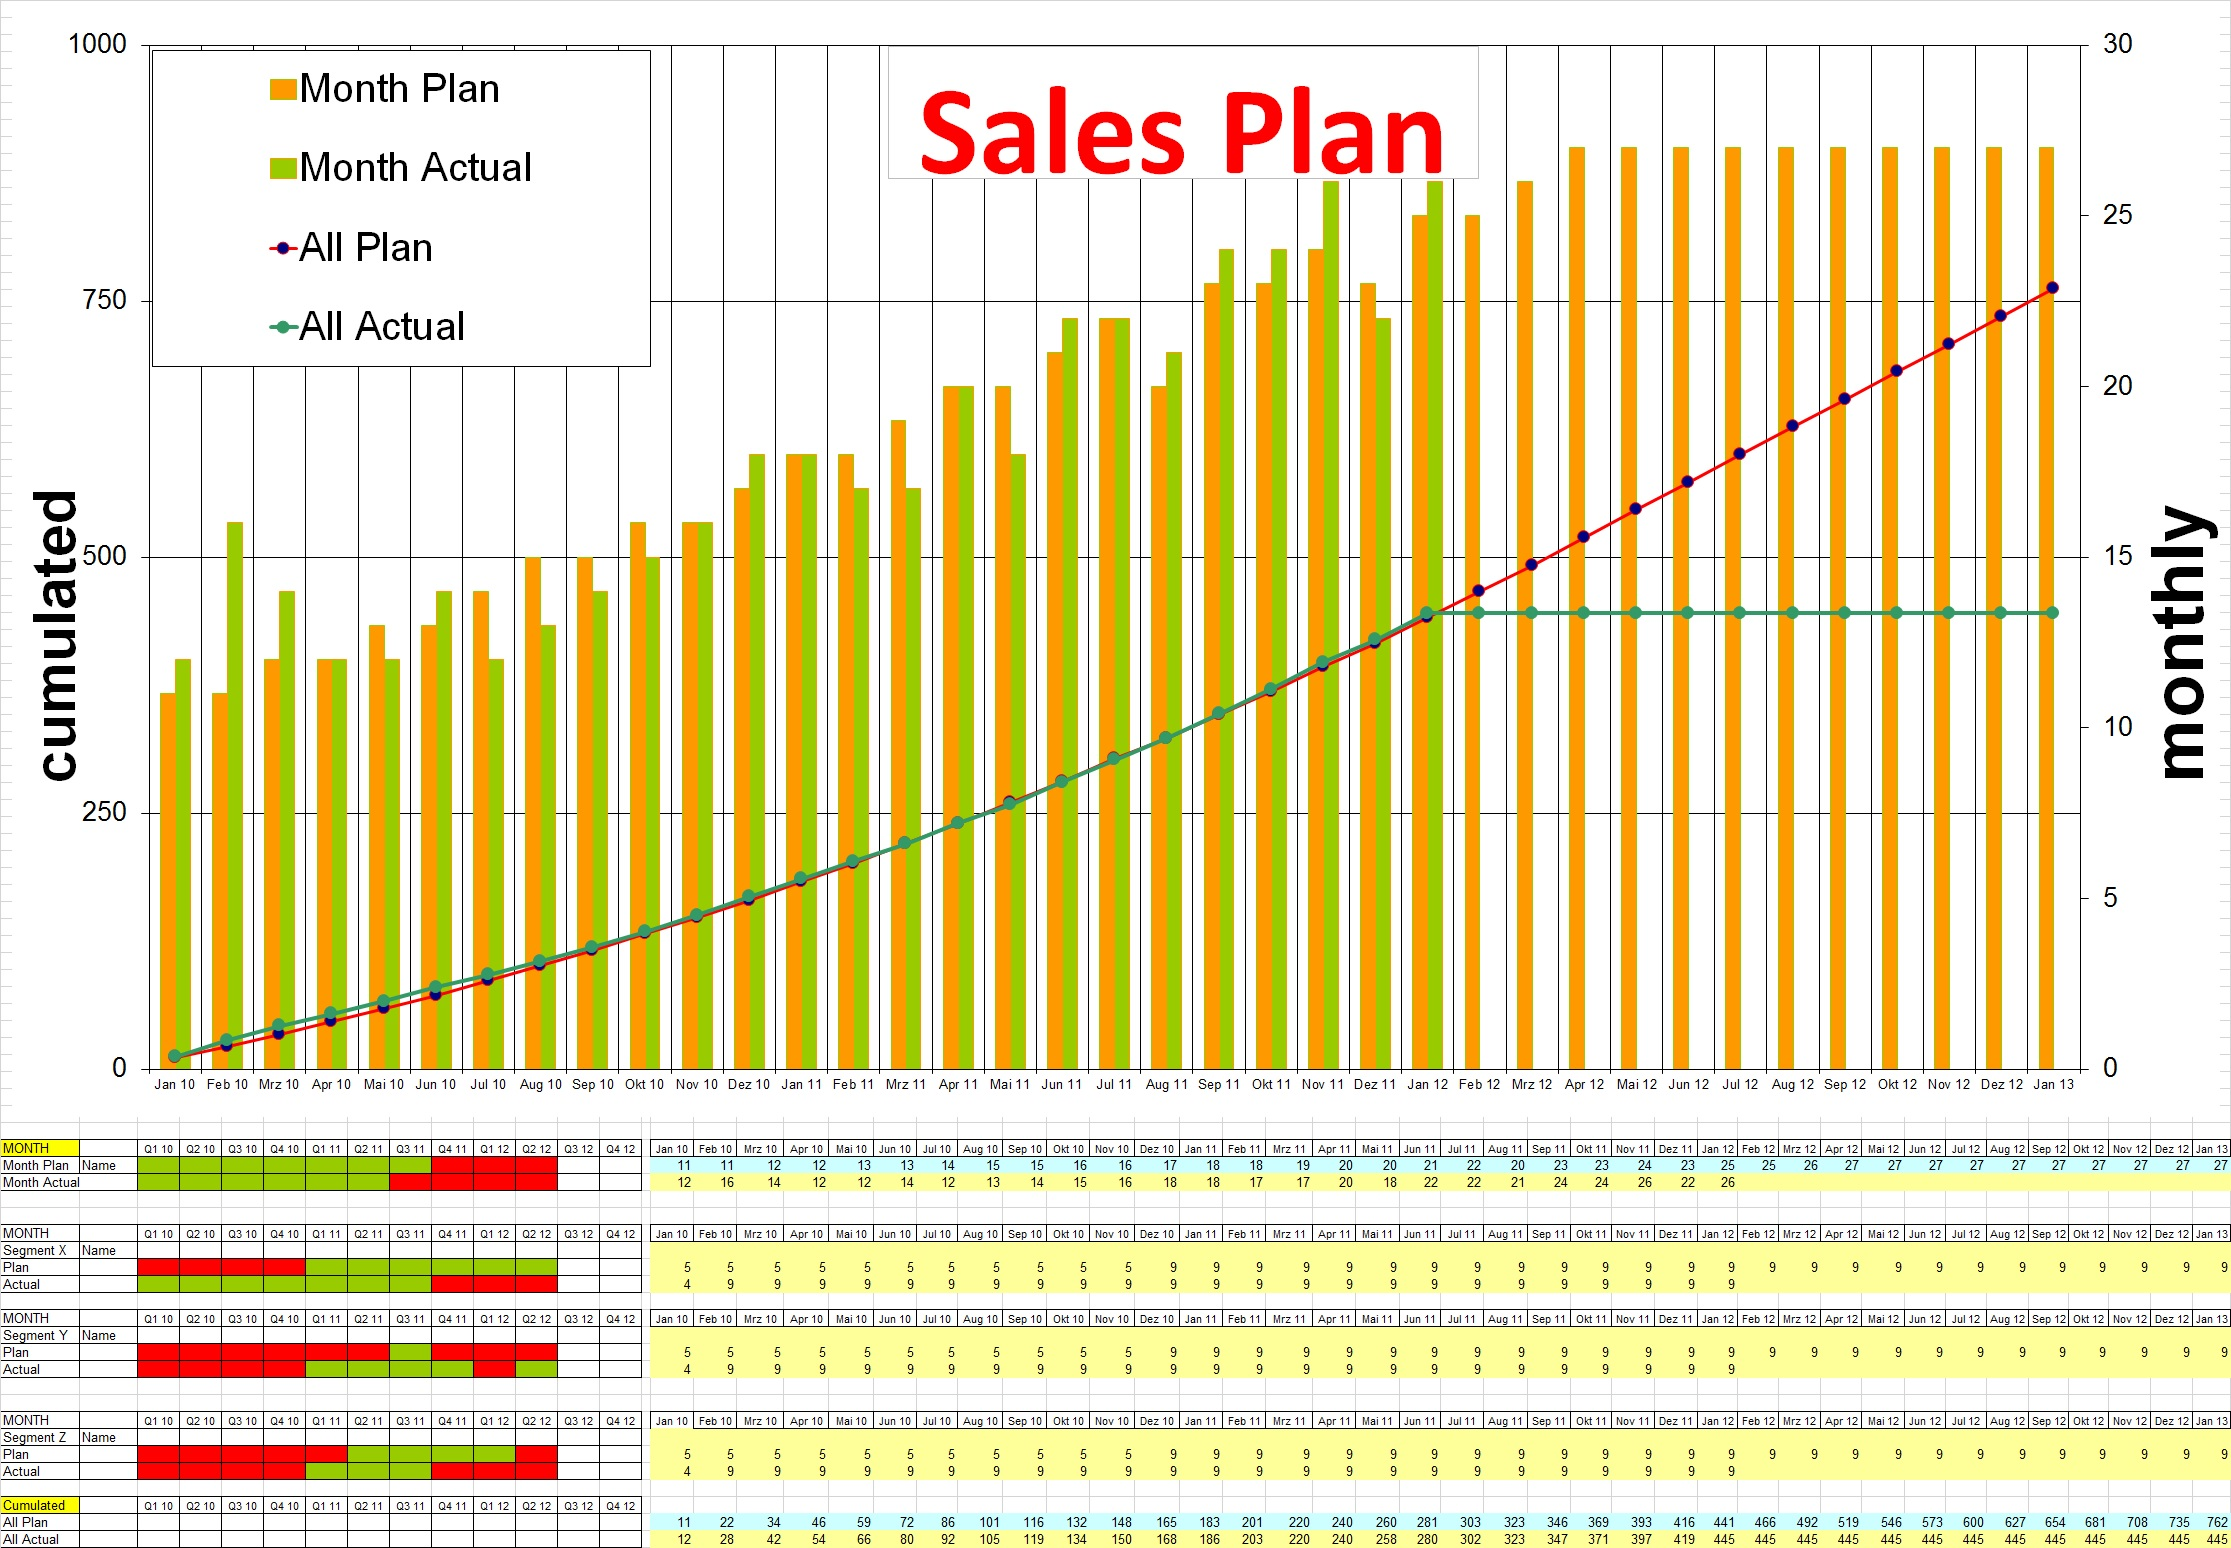 LEGAT sales plan